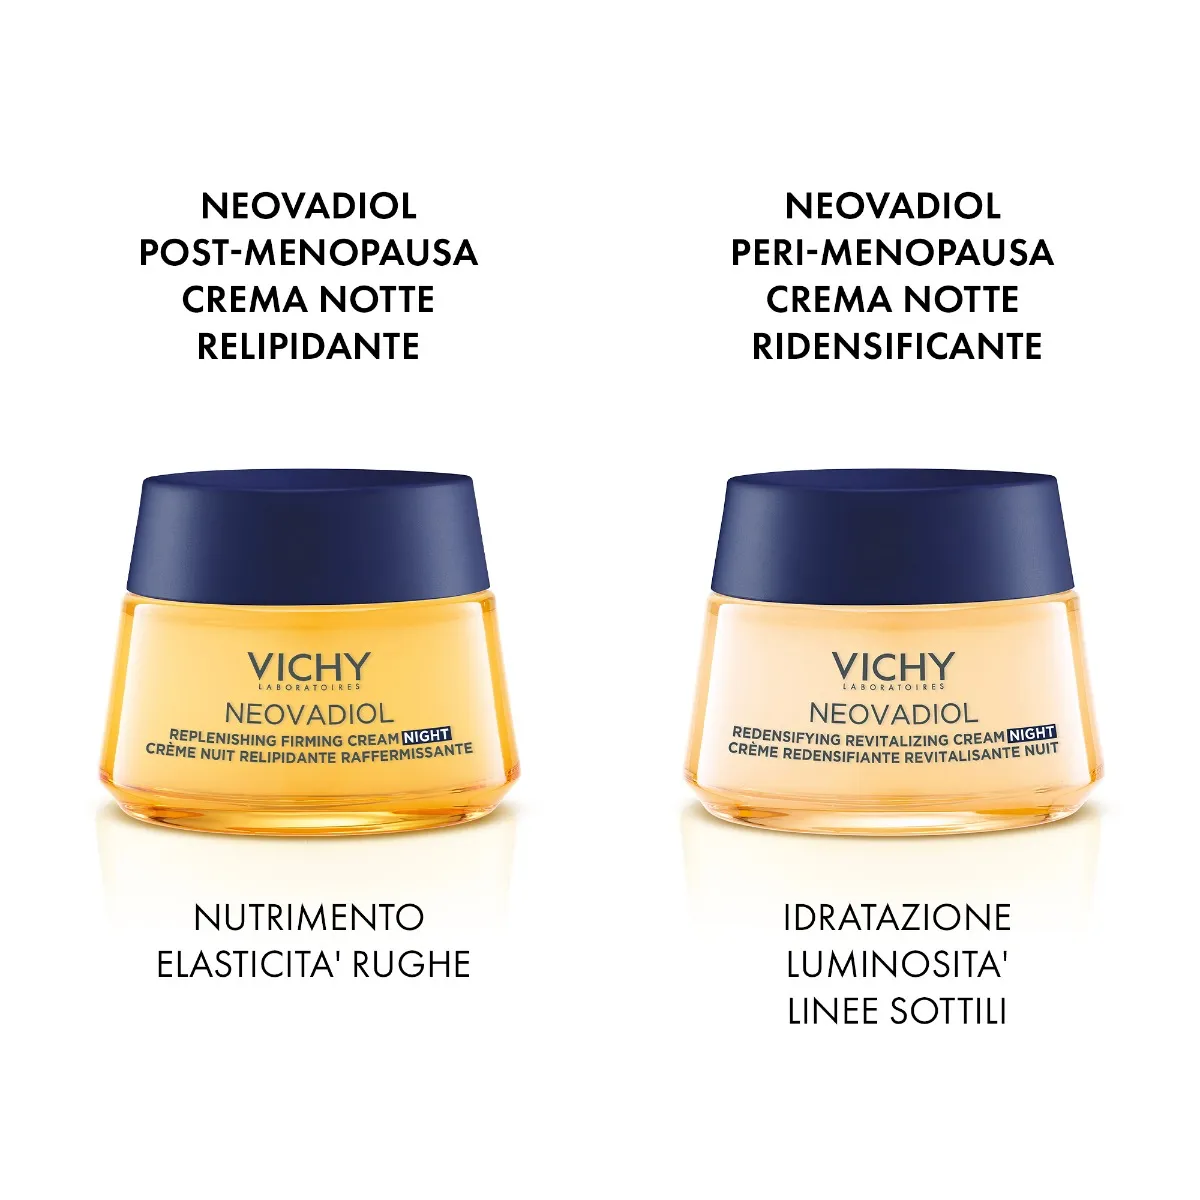 Vichy Neovadiol Pre-Menopausa Crema Notte 50 ml Ridensificante e Rivitalizzante